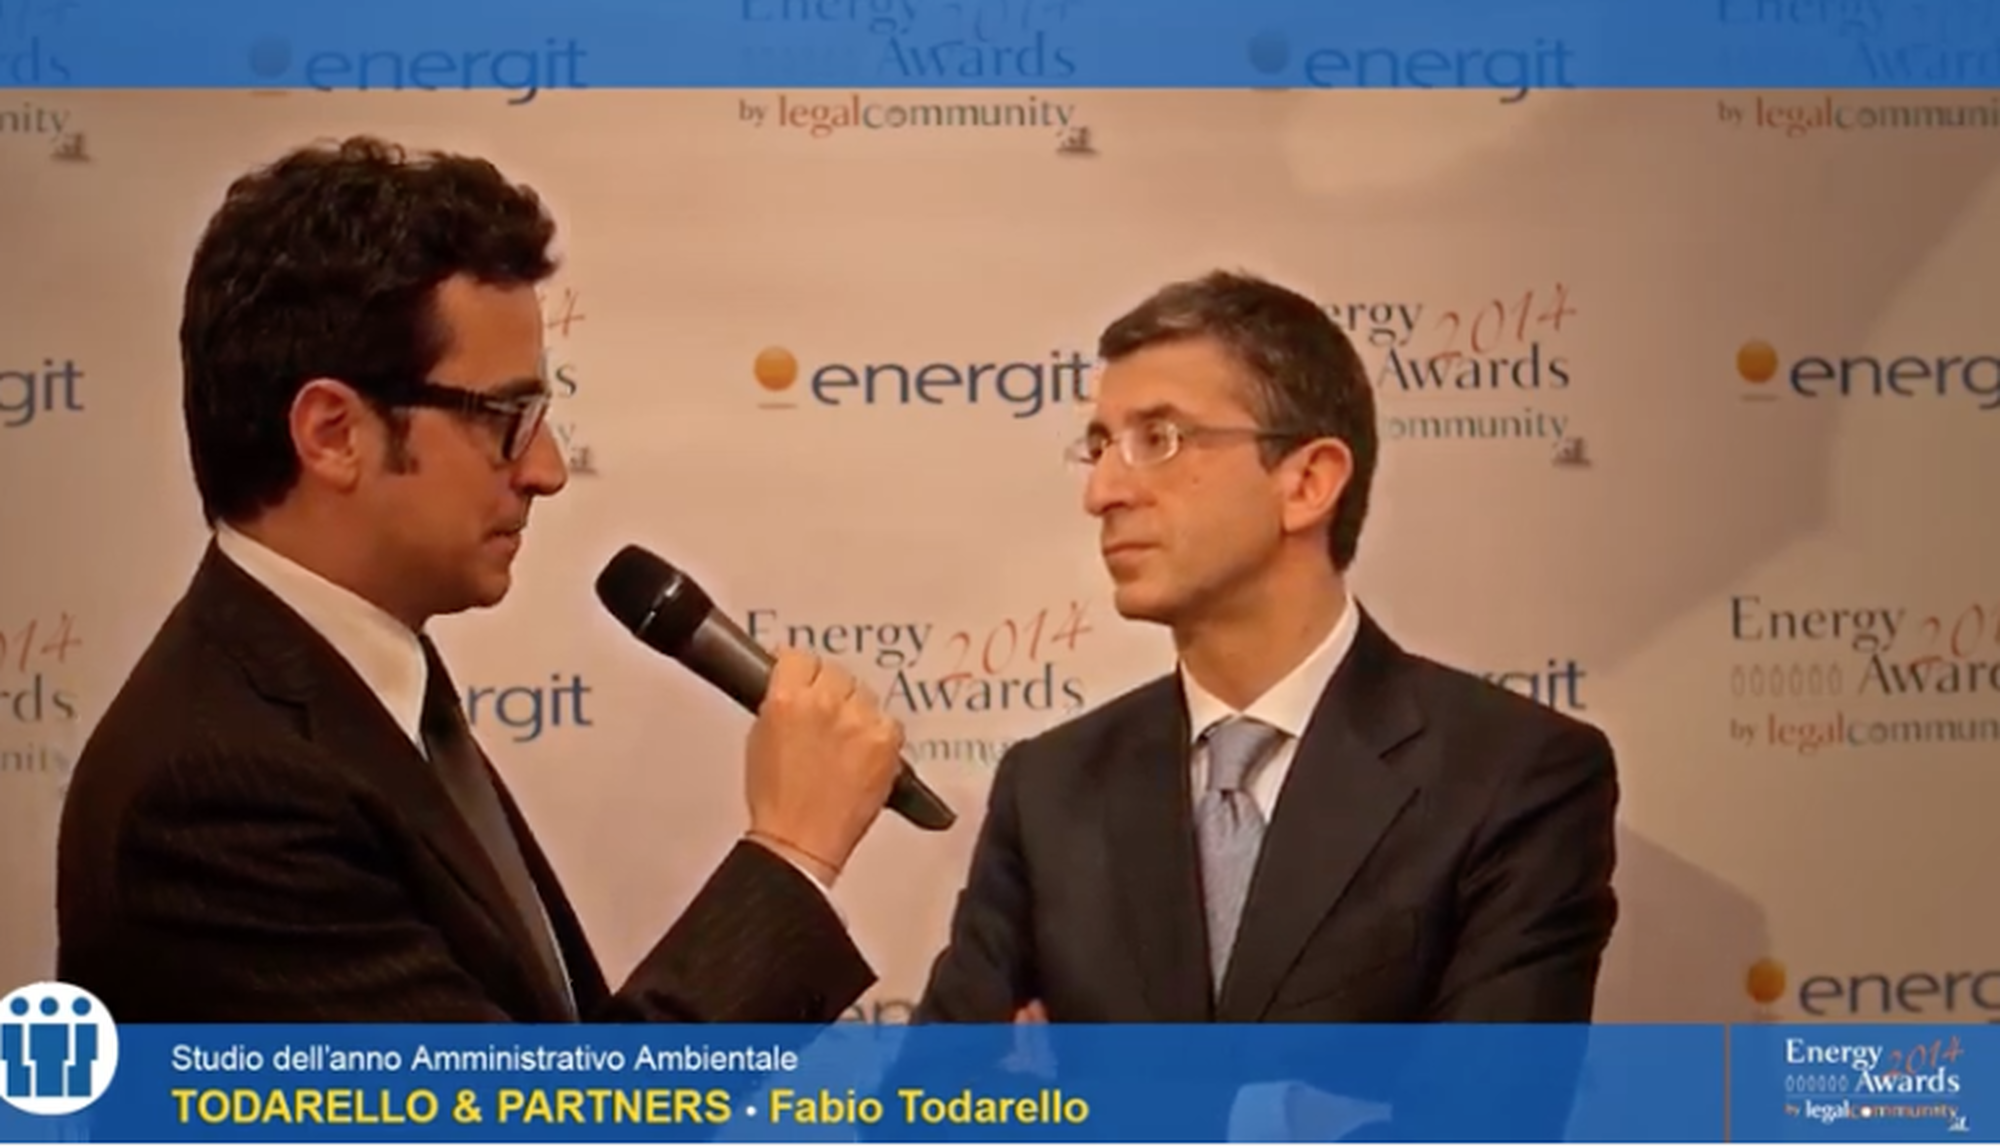 Energy Awards Legalcommunity 2014, Todarello & Partners è Studio dell’Anno.